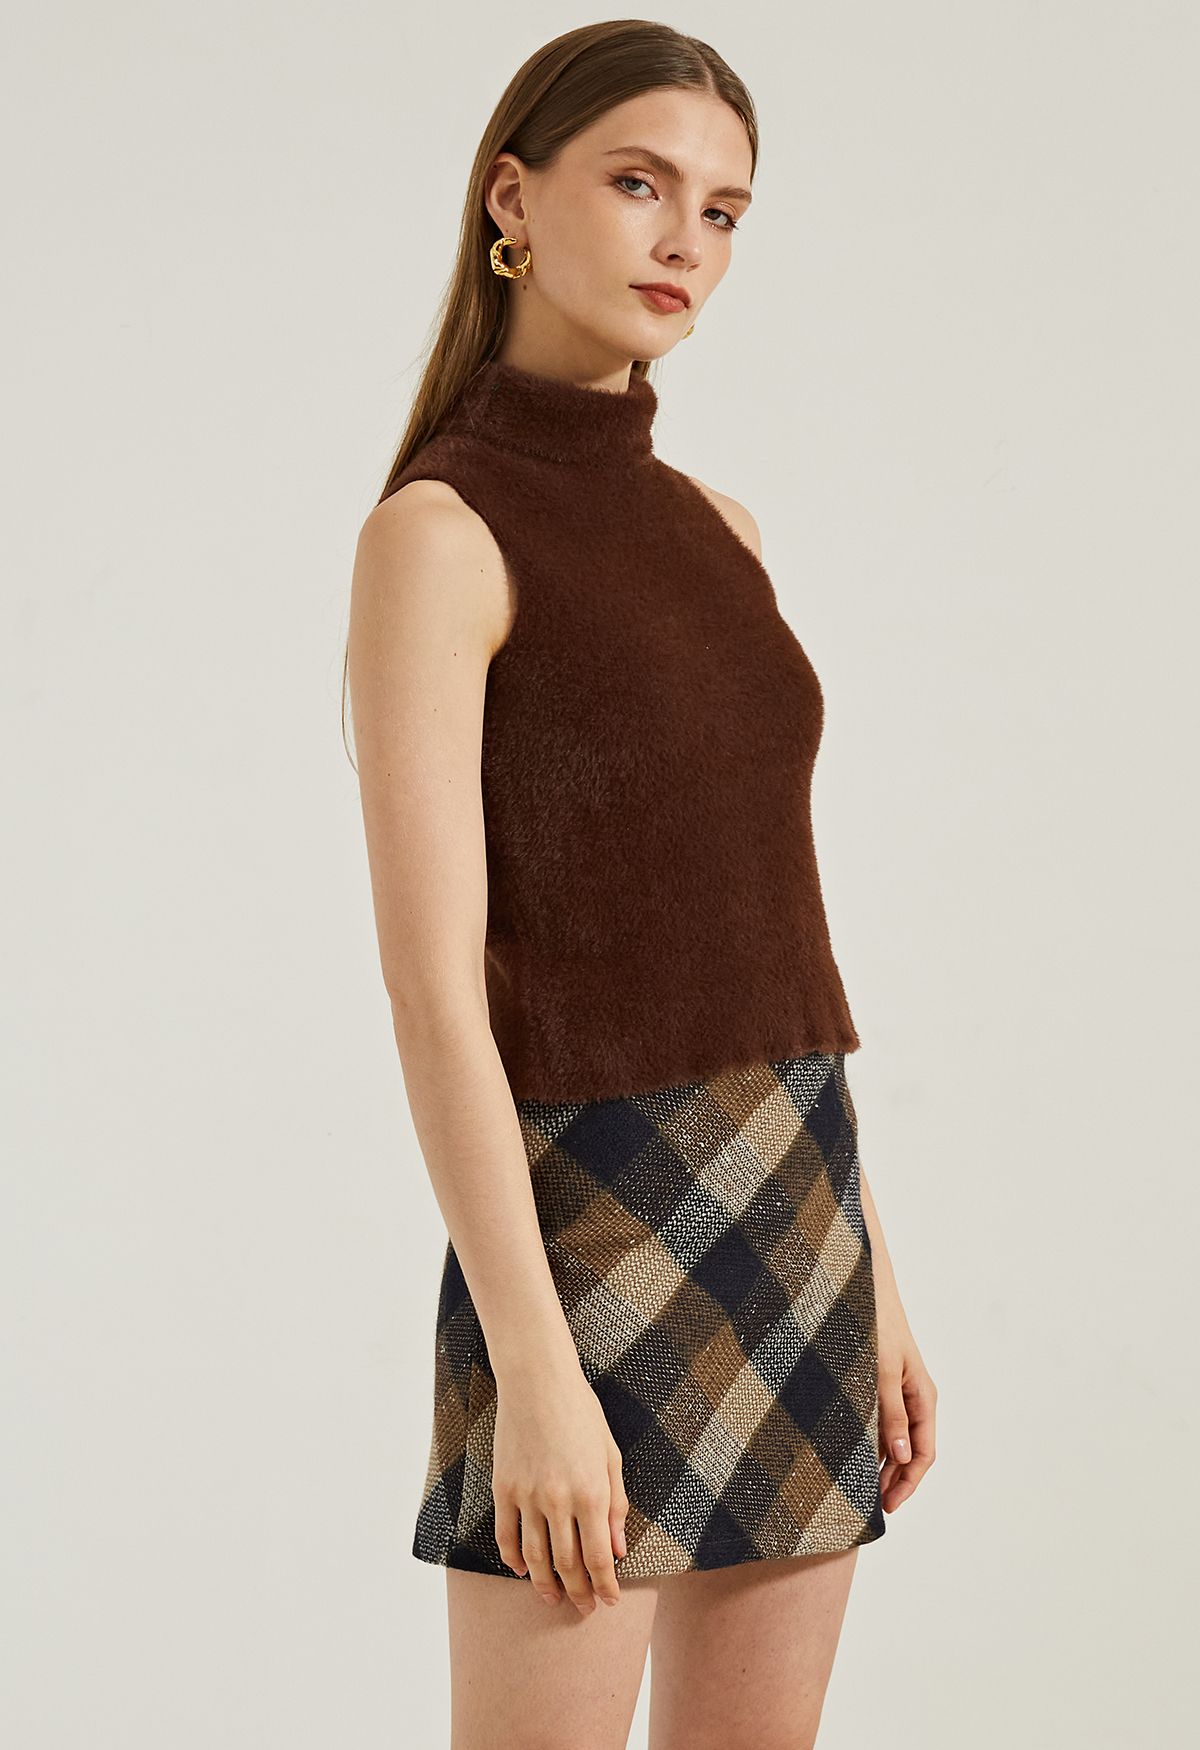 Minifalda de tweed a cuadros retro en tostado